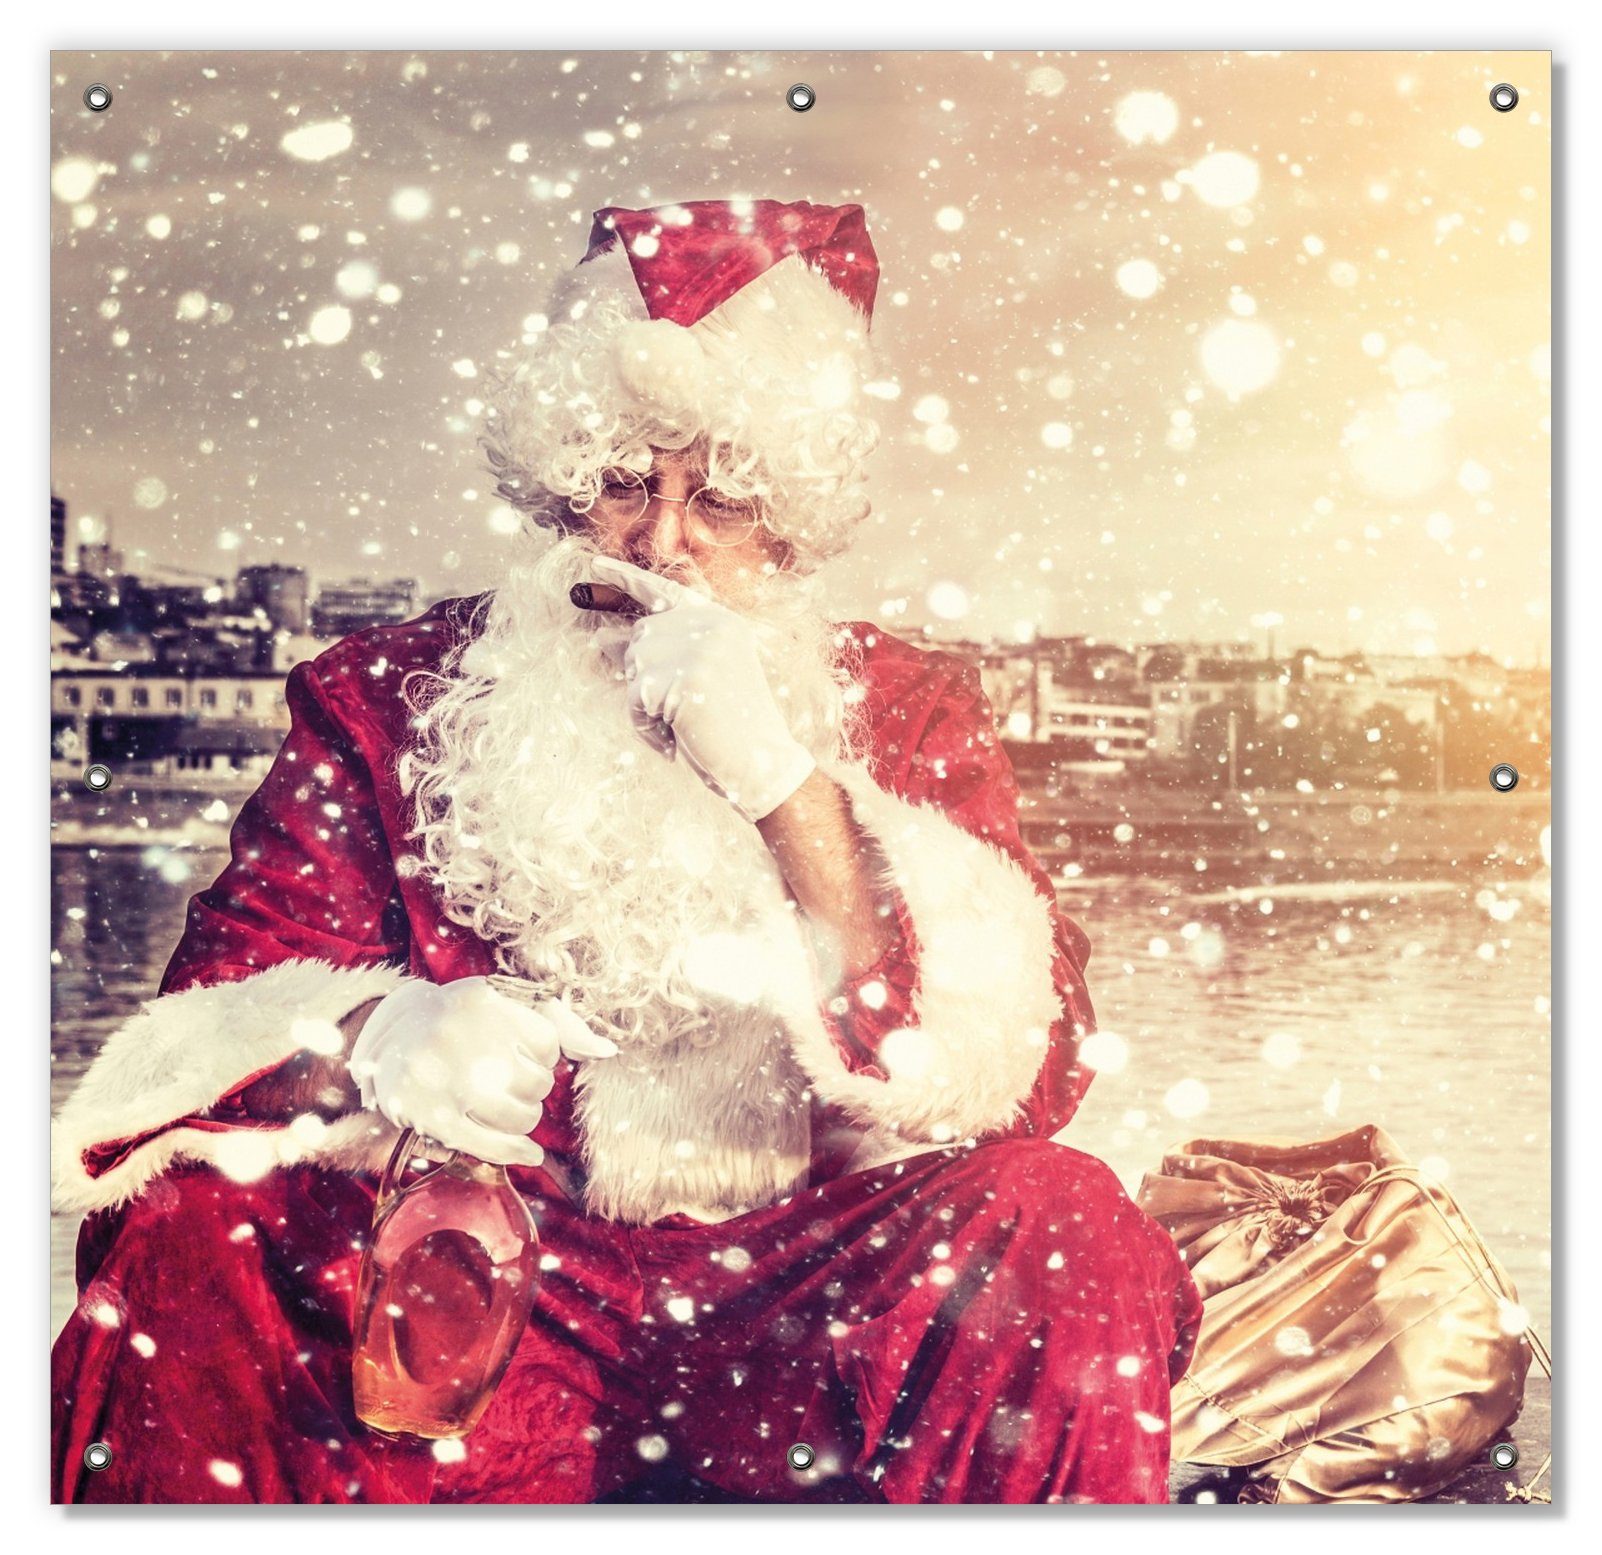 Sonnenschutz Christmas-Party Schnaps und wiederverwendbar - Zigarre, mit Wallario, mit blickdicht, Saugnäpfen, und wiederablösbar Weihnachtsmann